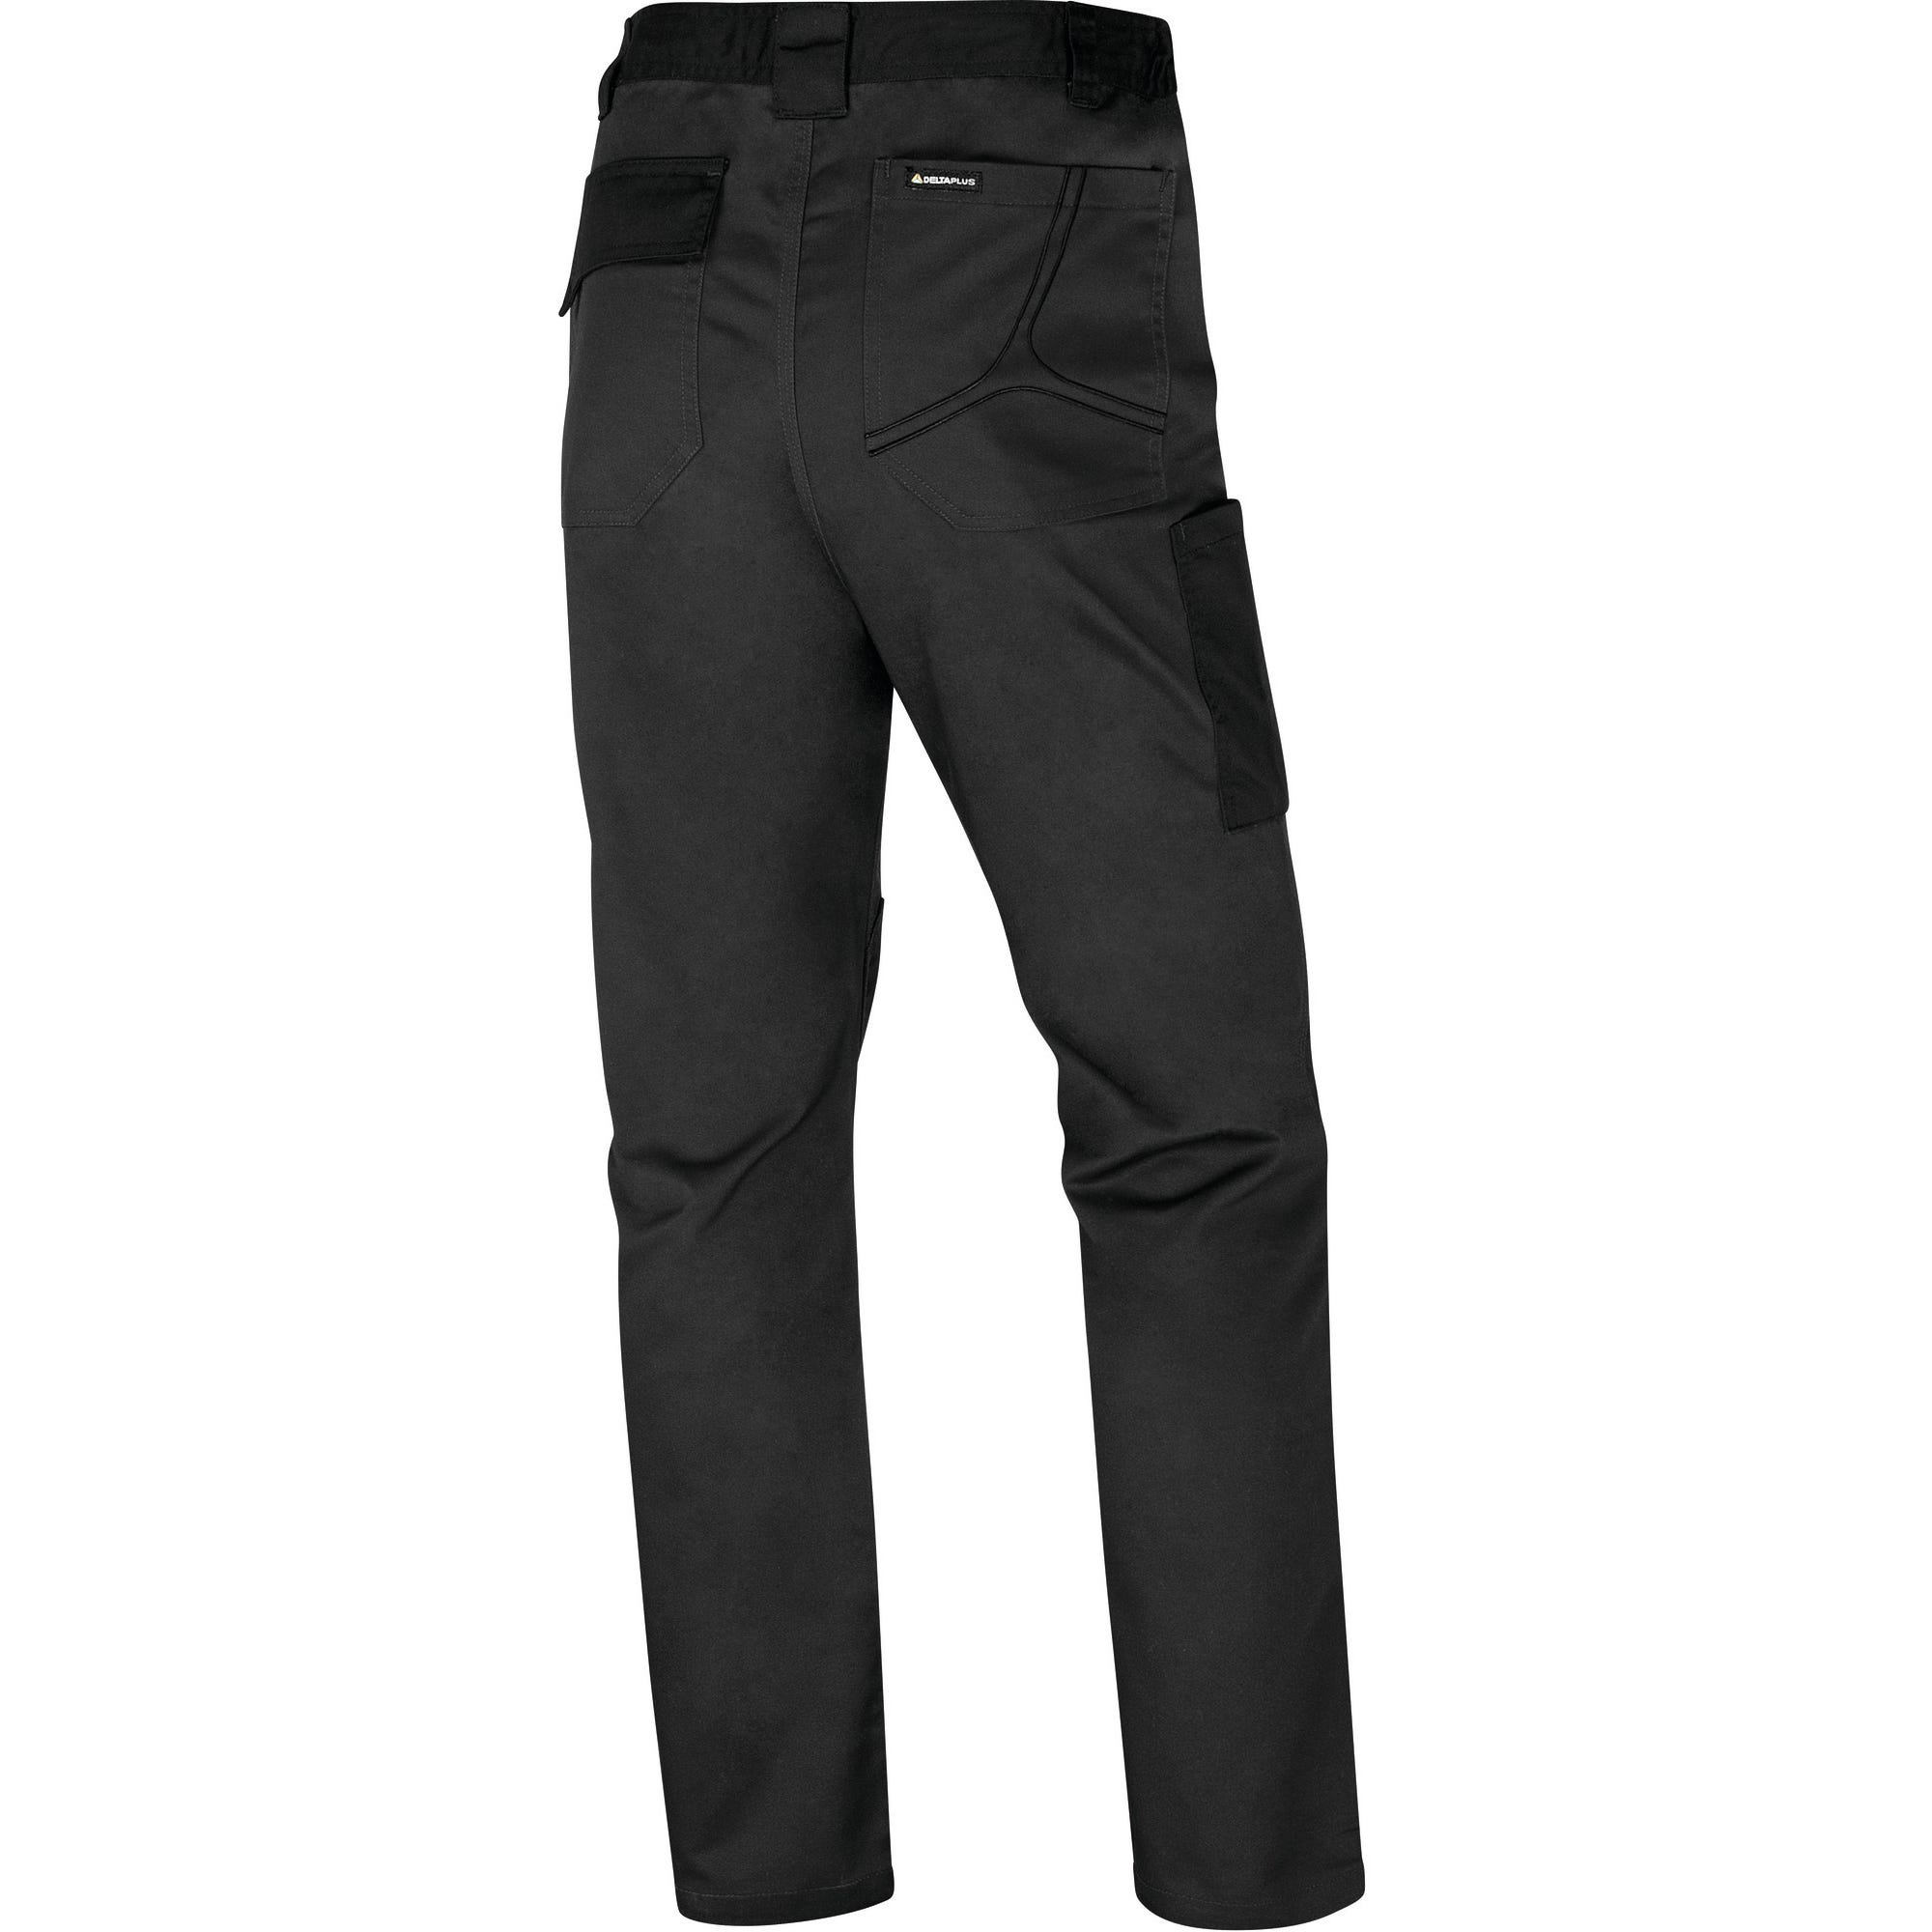 Pantalon de travail doublure flanelle Gris T.S Mach2 - DELTA PLUS 1